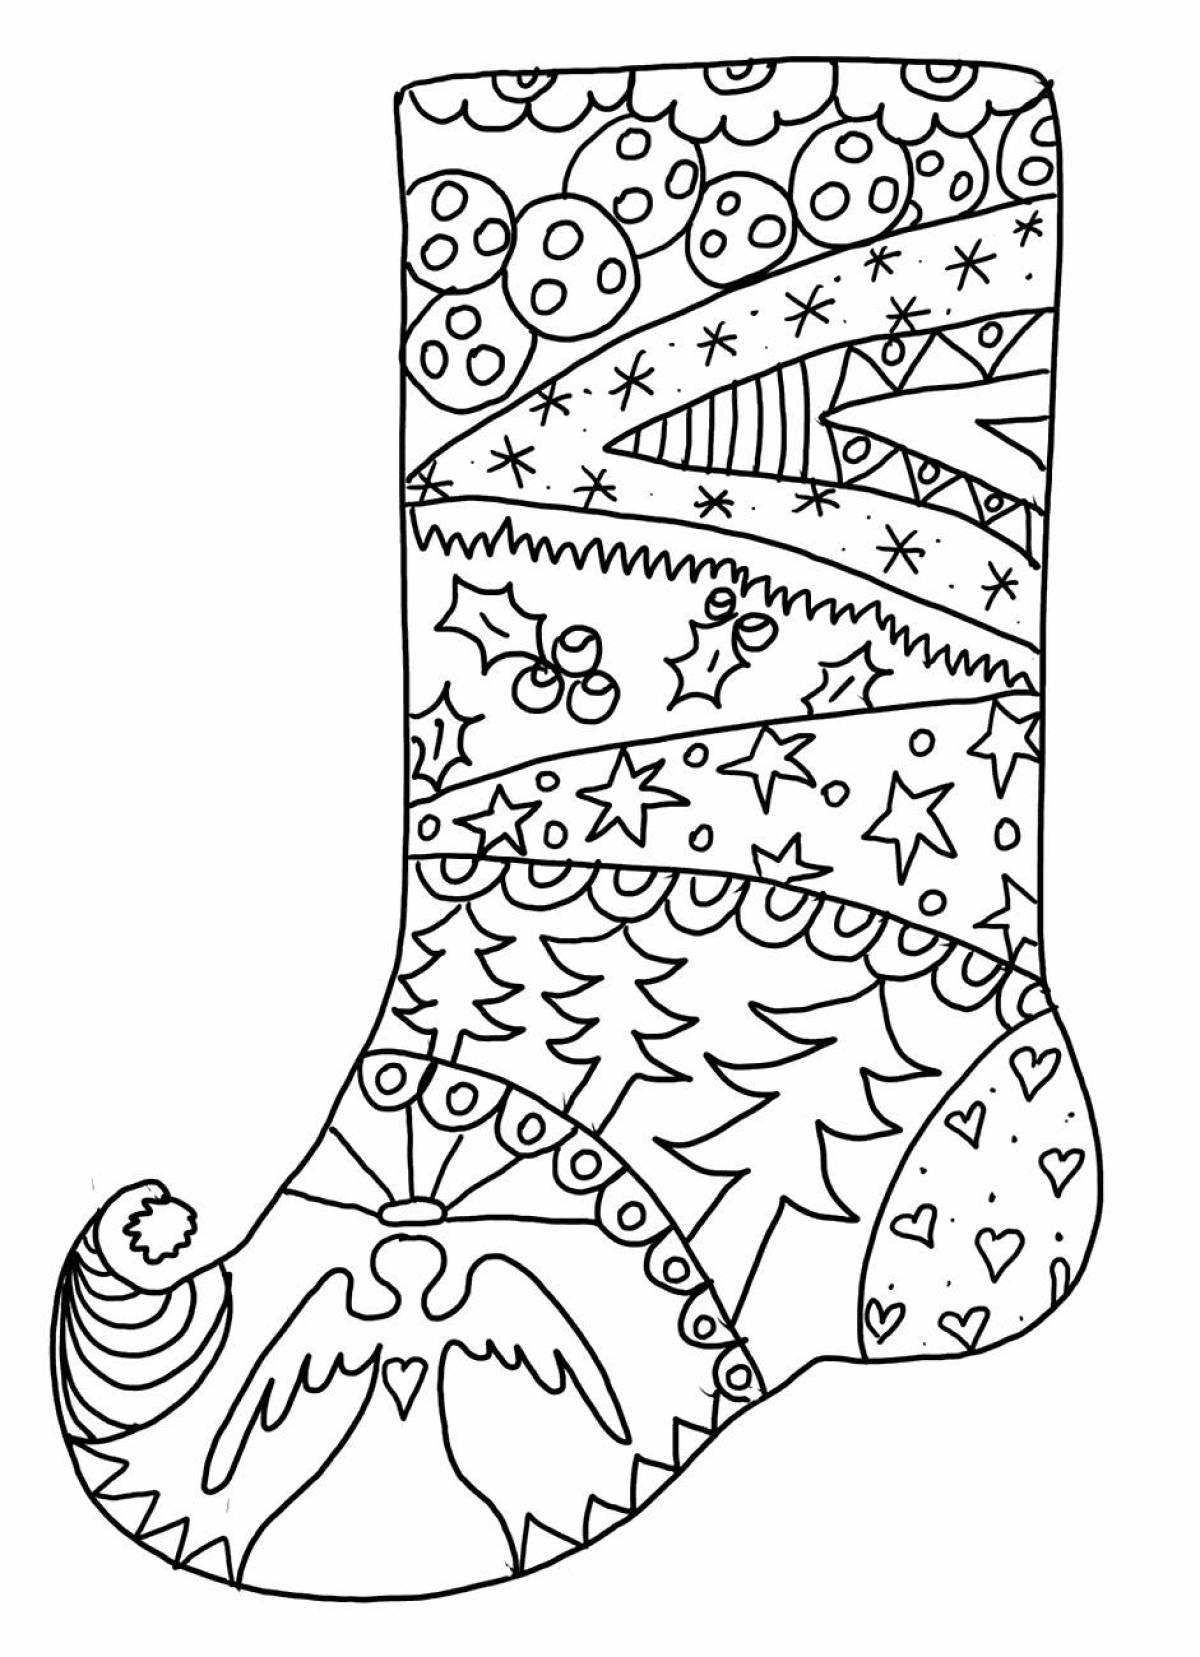 Christmas socks live coloring page